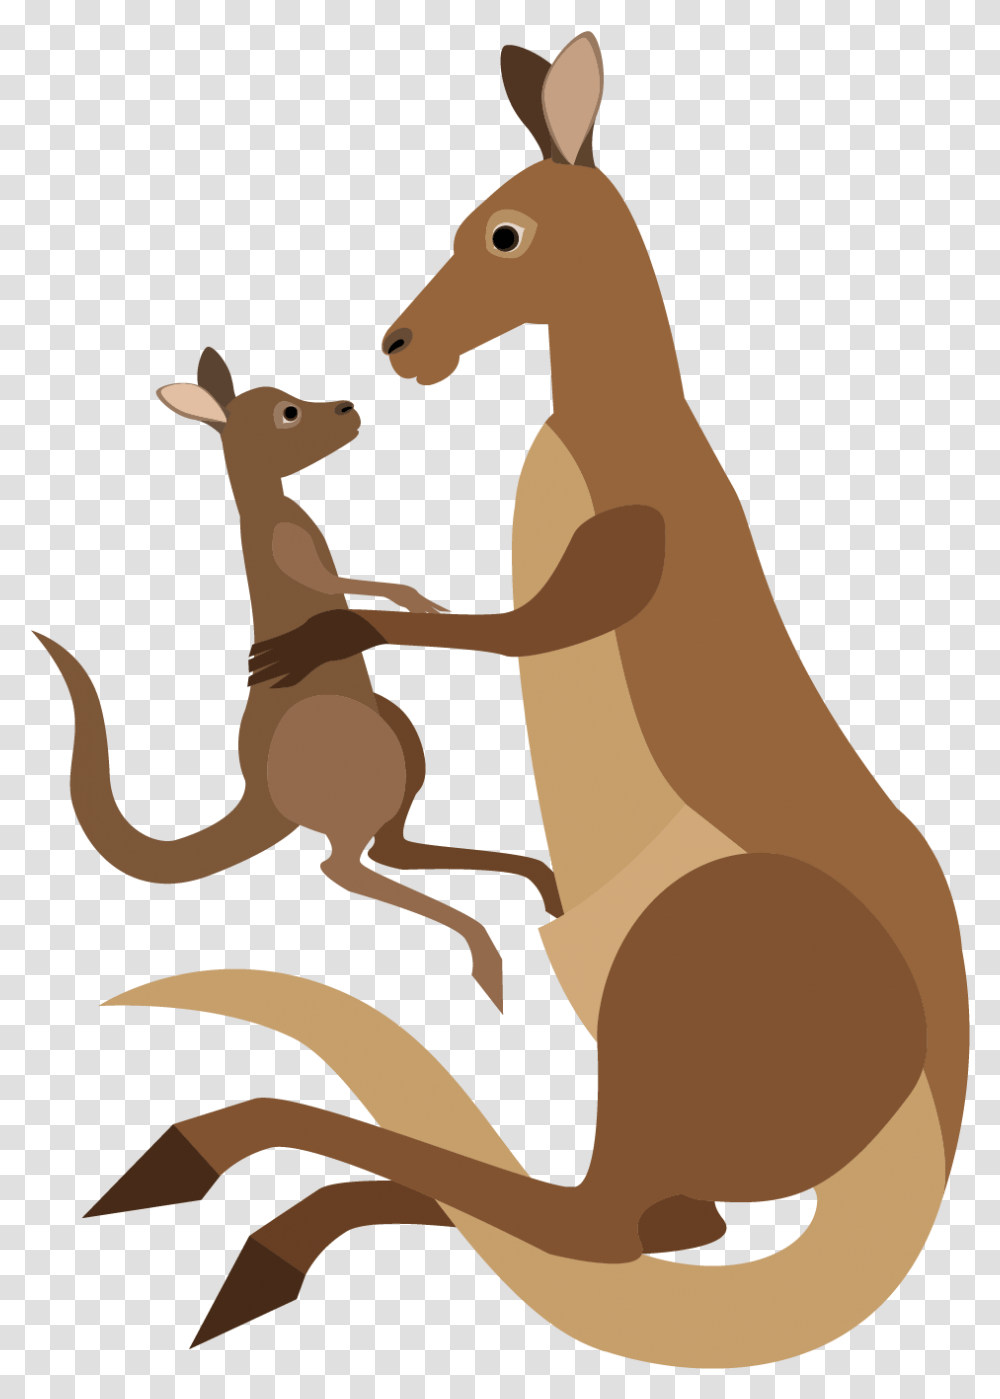 Kangaroo Cartoon Macropodidae Kangaroo Vector, Mammal, Animal, Wallaby, Bird Transparent Png